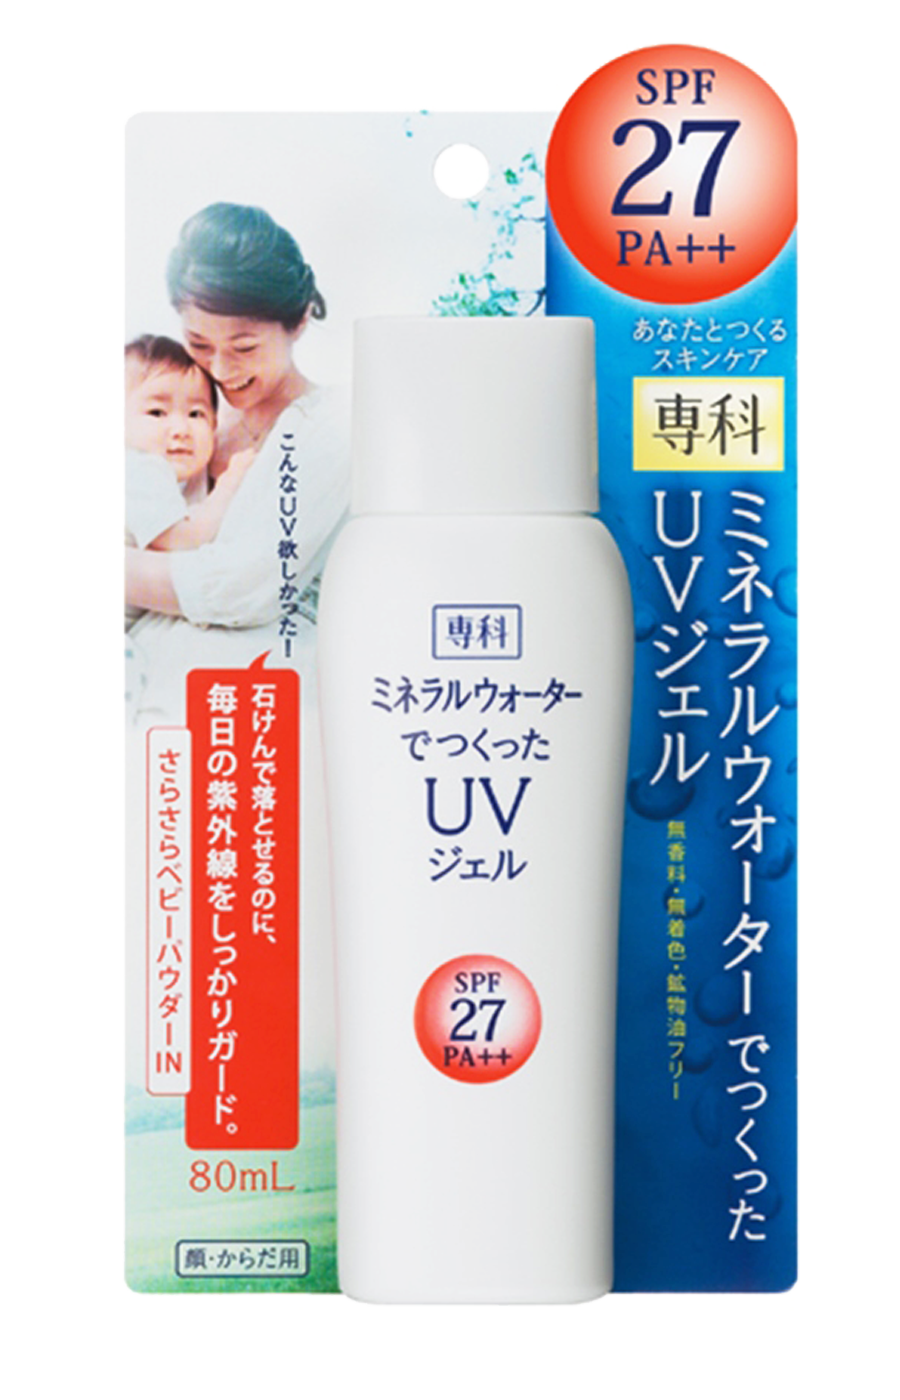 Shiseido Senka UV Gel солнцезащитный гель с УФ-фильтром SPF 27, P++, 80мл